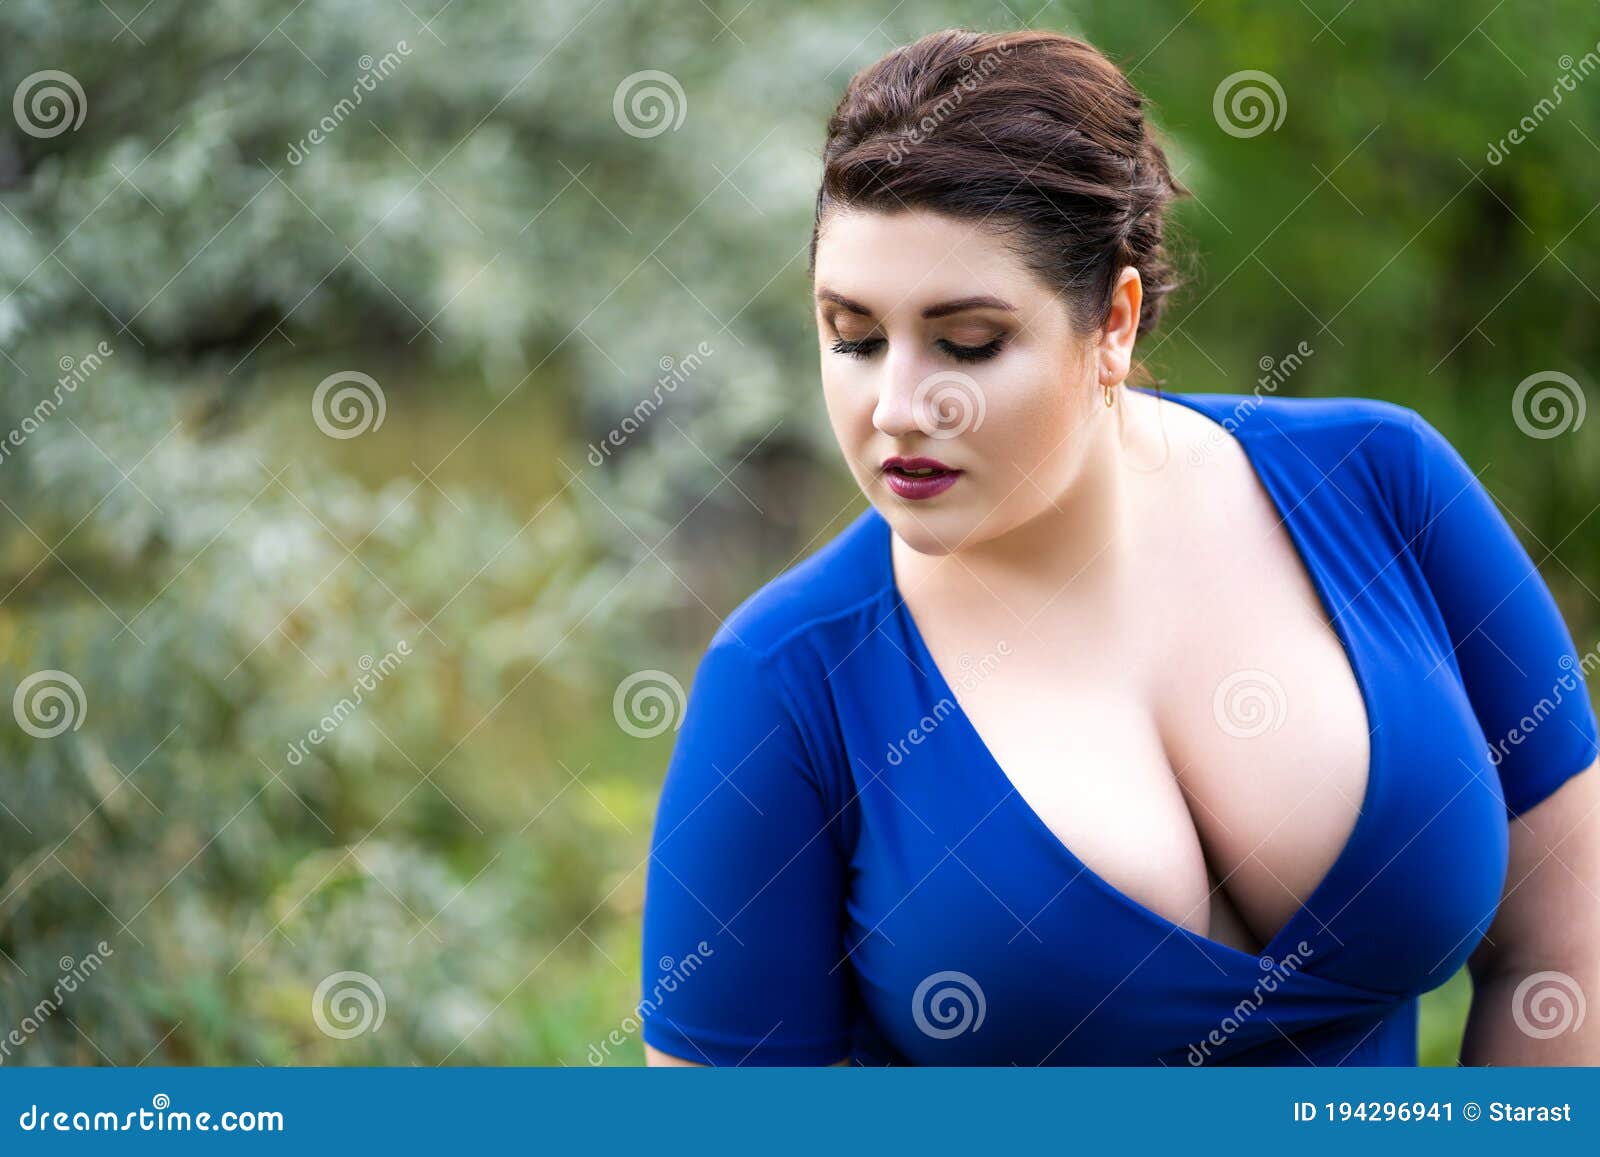 dean hagen recommends big tits blue dress pic